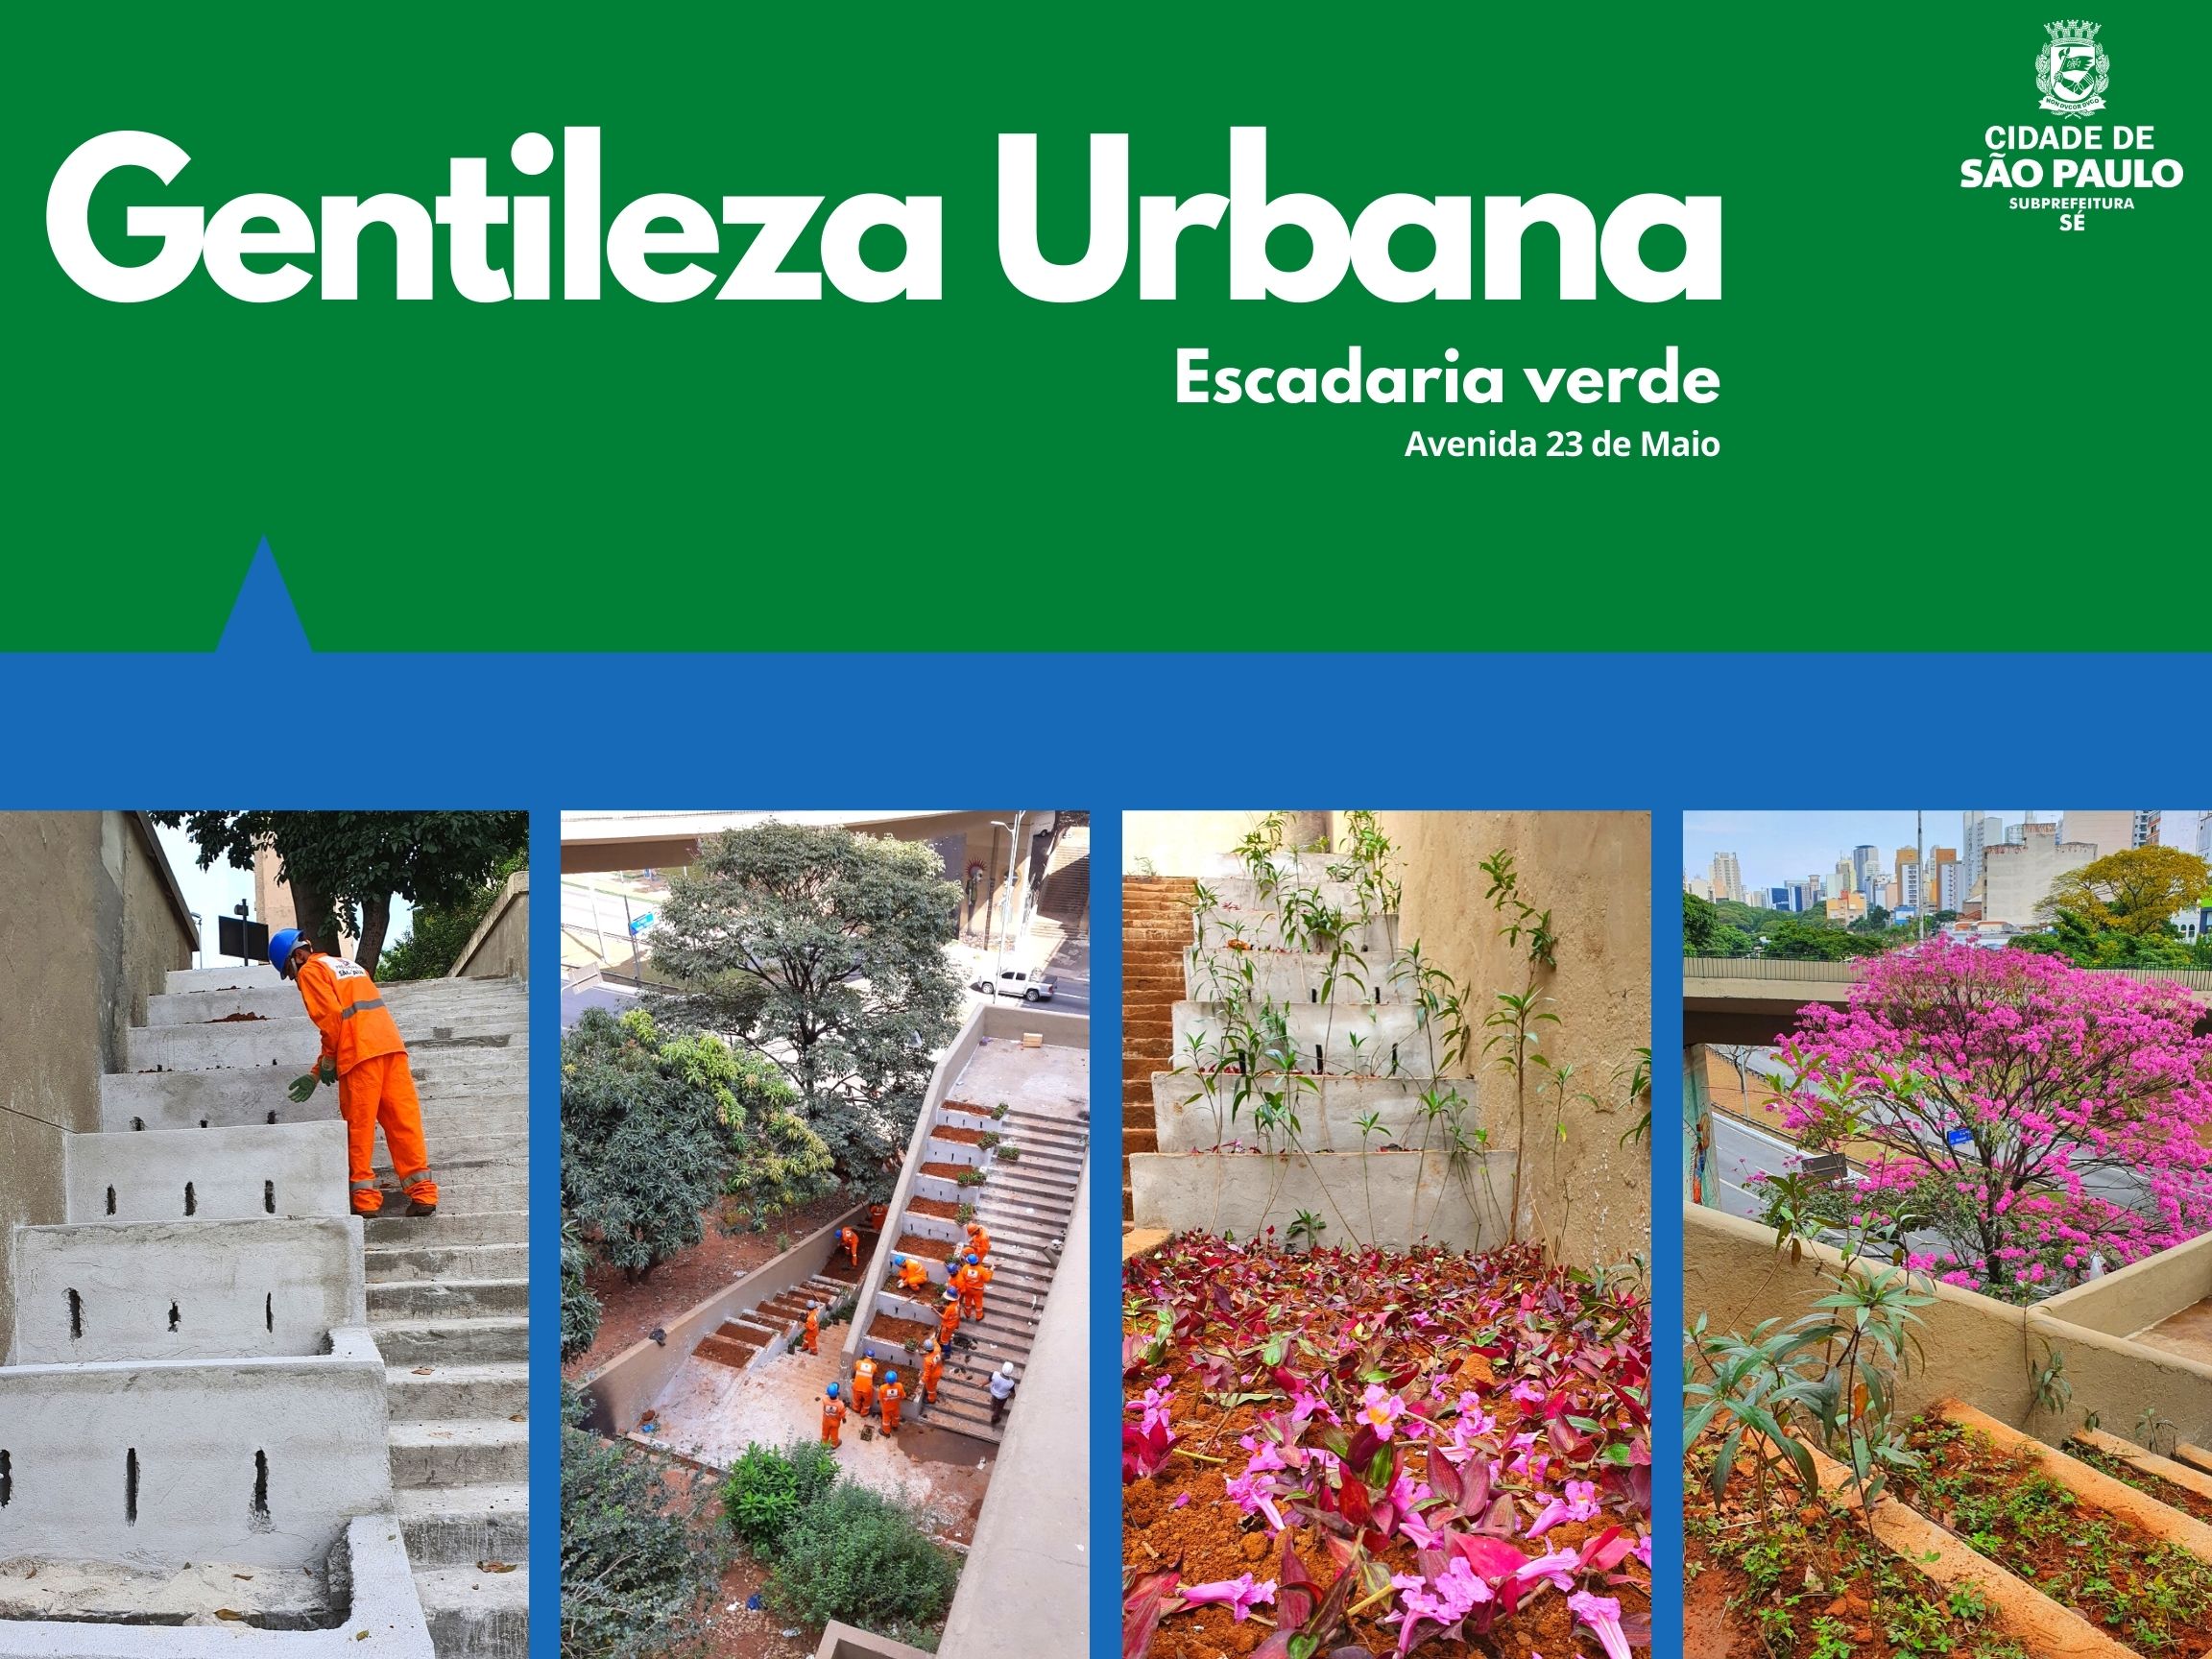 Arte escrito Gentileza Urbana com o logotipo da subprefeitura Sé mostra quatro fotos da escadaria verde